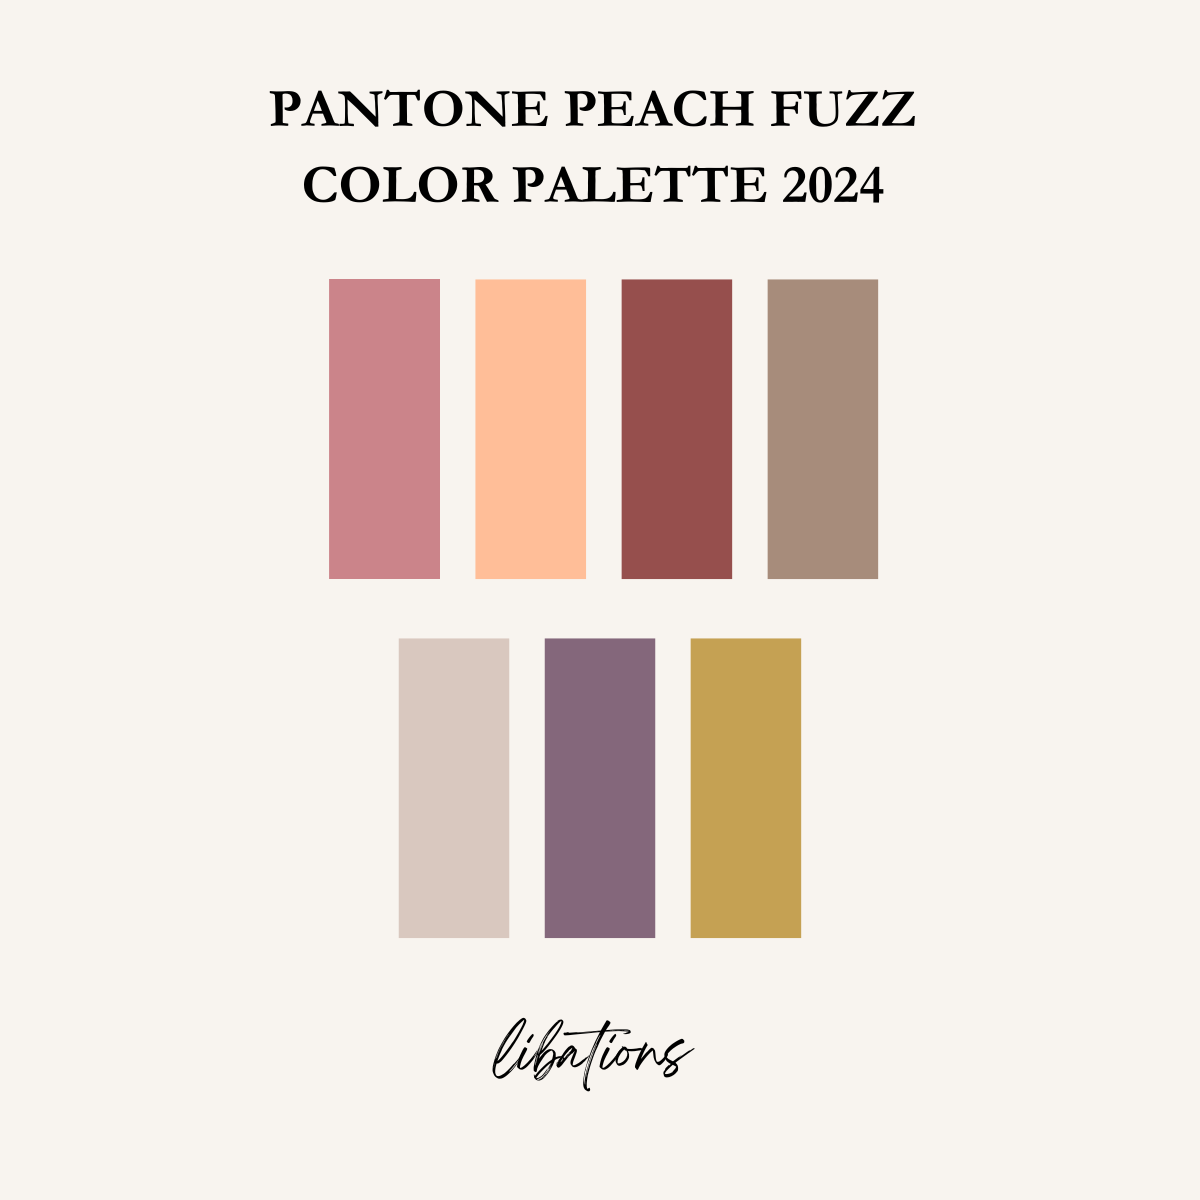 pantone peach fuzz color palette libations nordroom